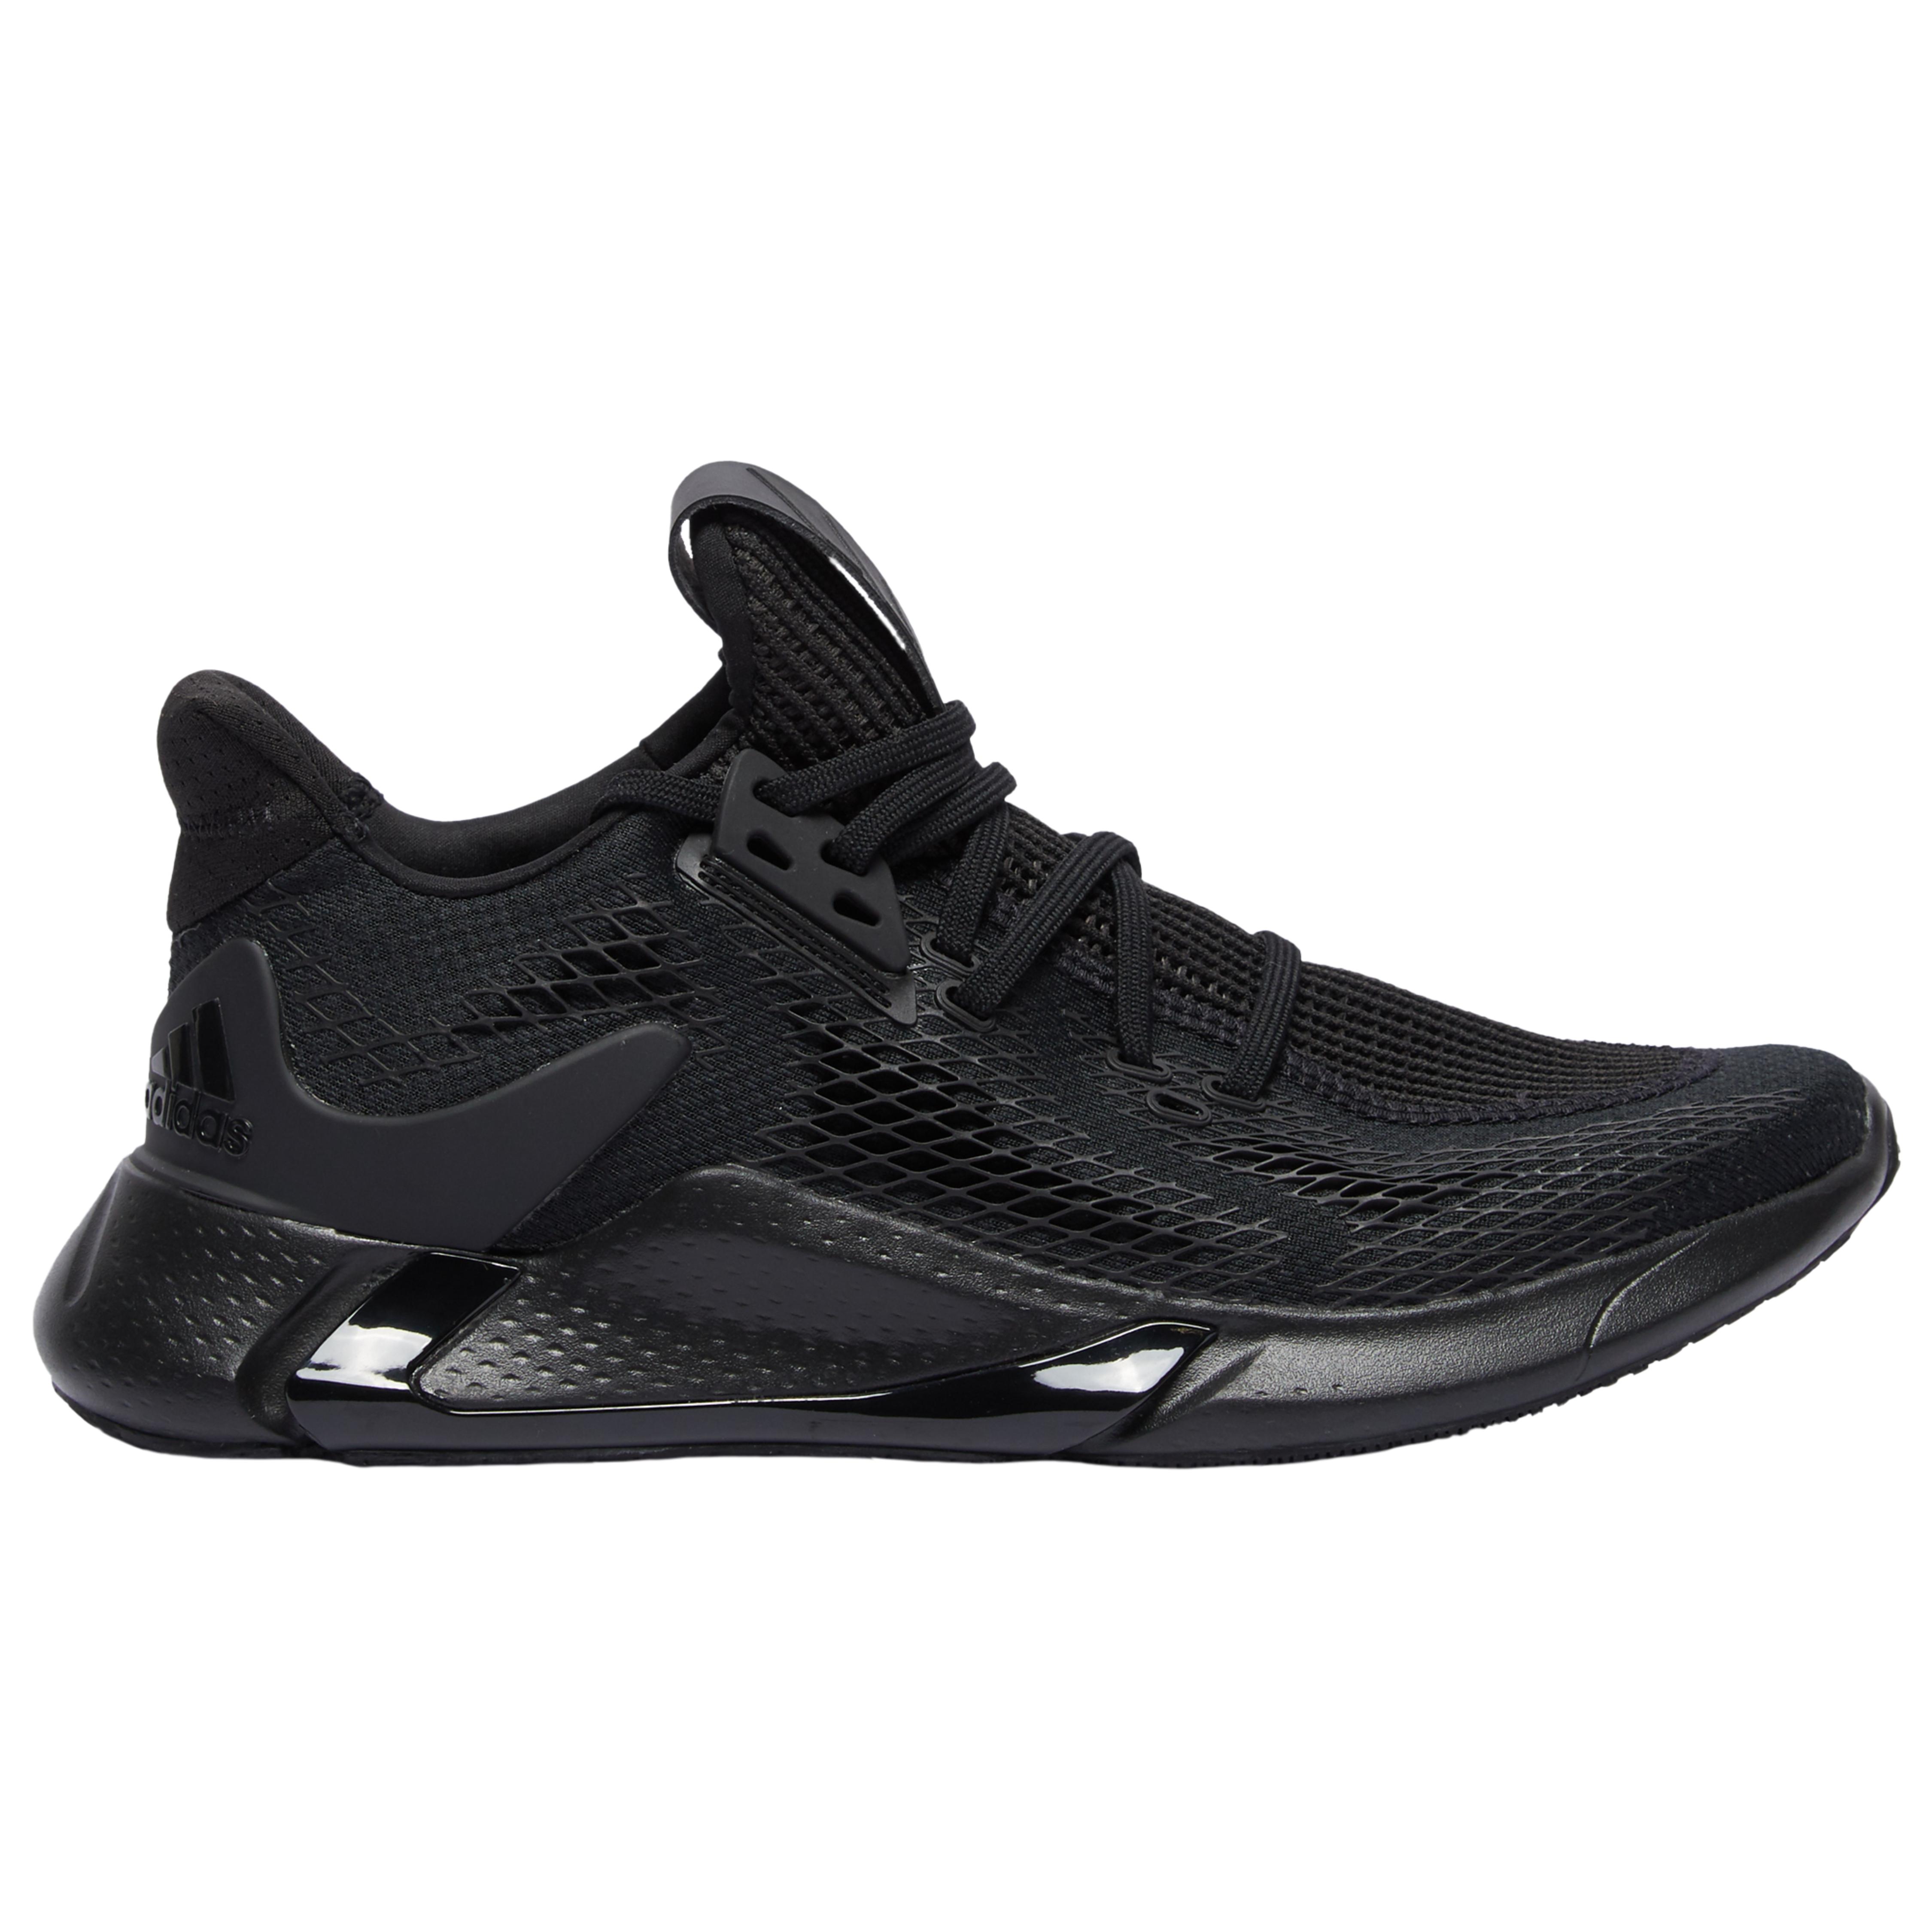 adidas Rubber Edge Xt in Black/Black/Black (Black) for Men - Lyst